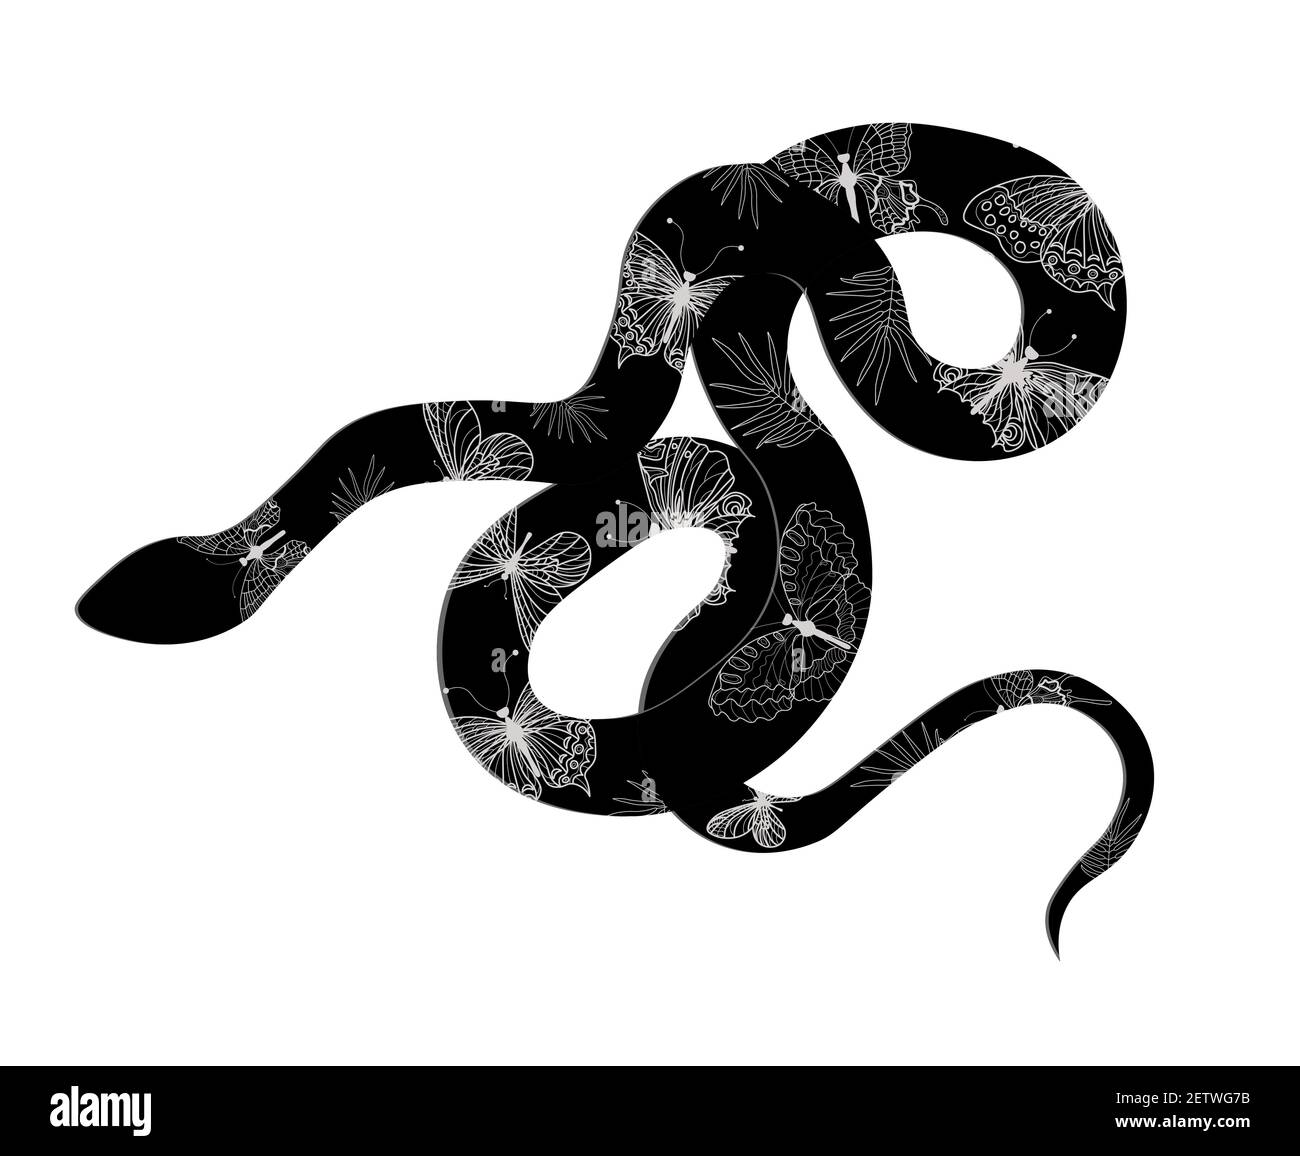 Serpent whiplash ou serpent whiplash occidental Hierophis viridiflavus sur un panneau blanc. Fond. Gênes. Ligurie. Italie. Illustration de Vecteur